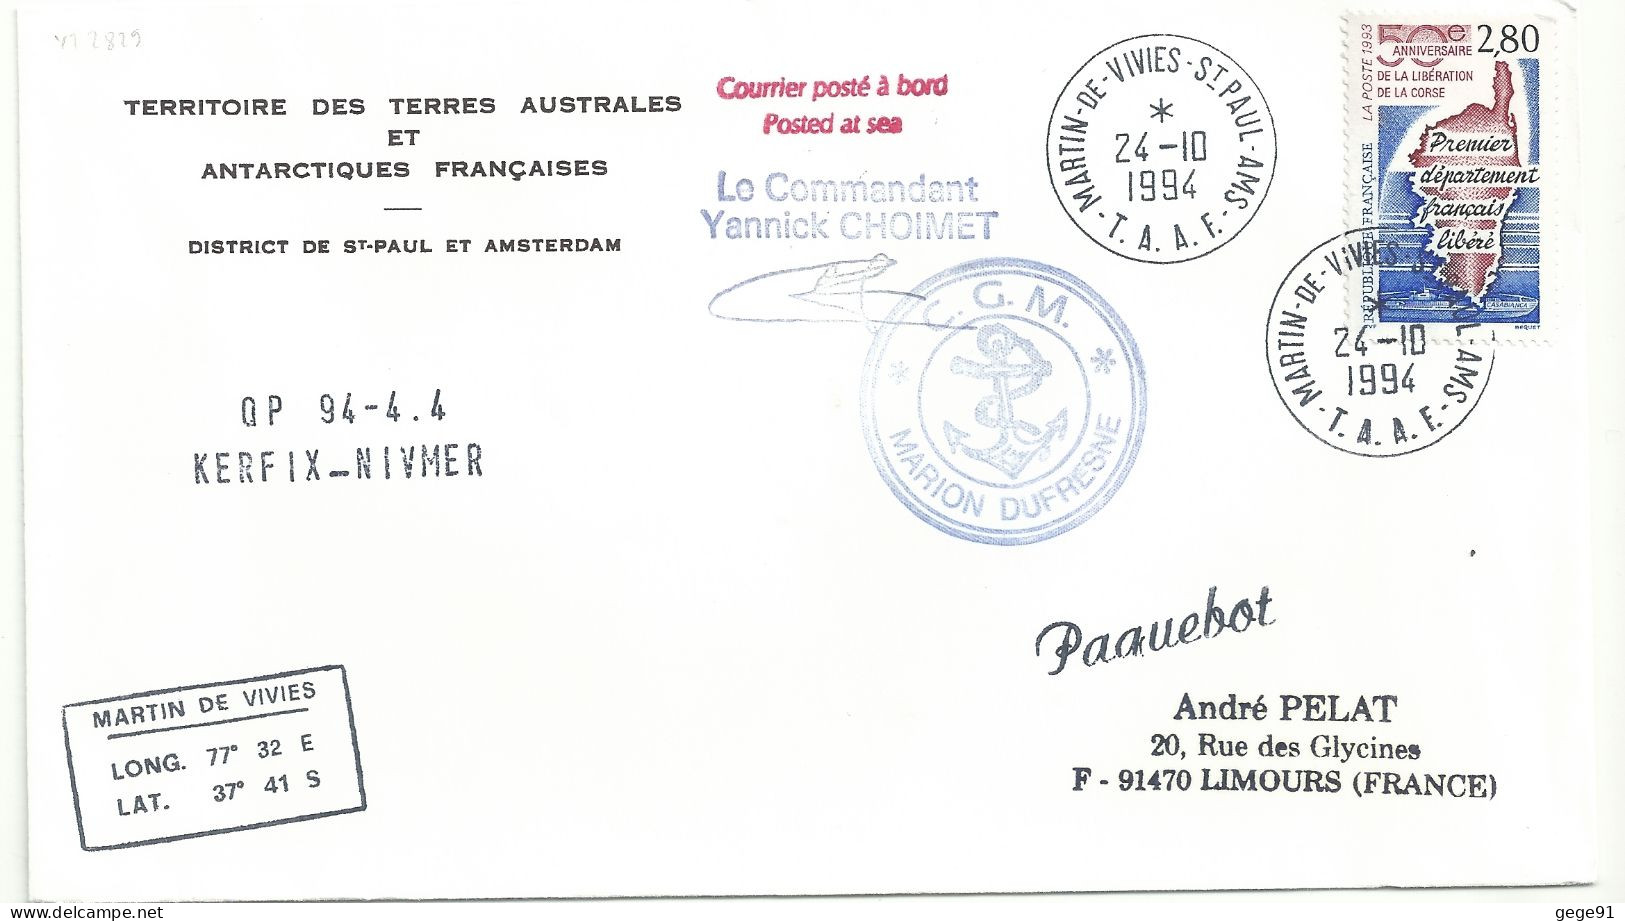 YT 2829 Libération De La Corse - Posté à Bord Du MD - Paquebot - Martin De Viviès - St Paul AMS - 24/10/1994 - Covers & Documents